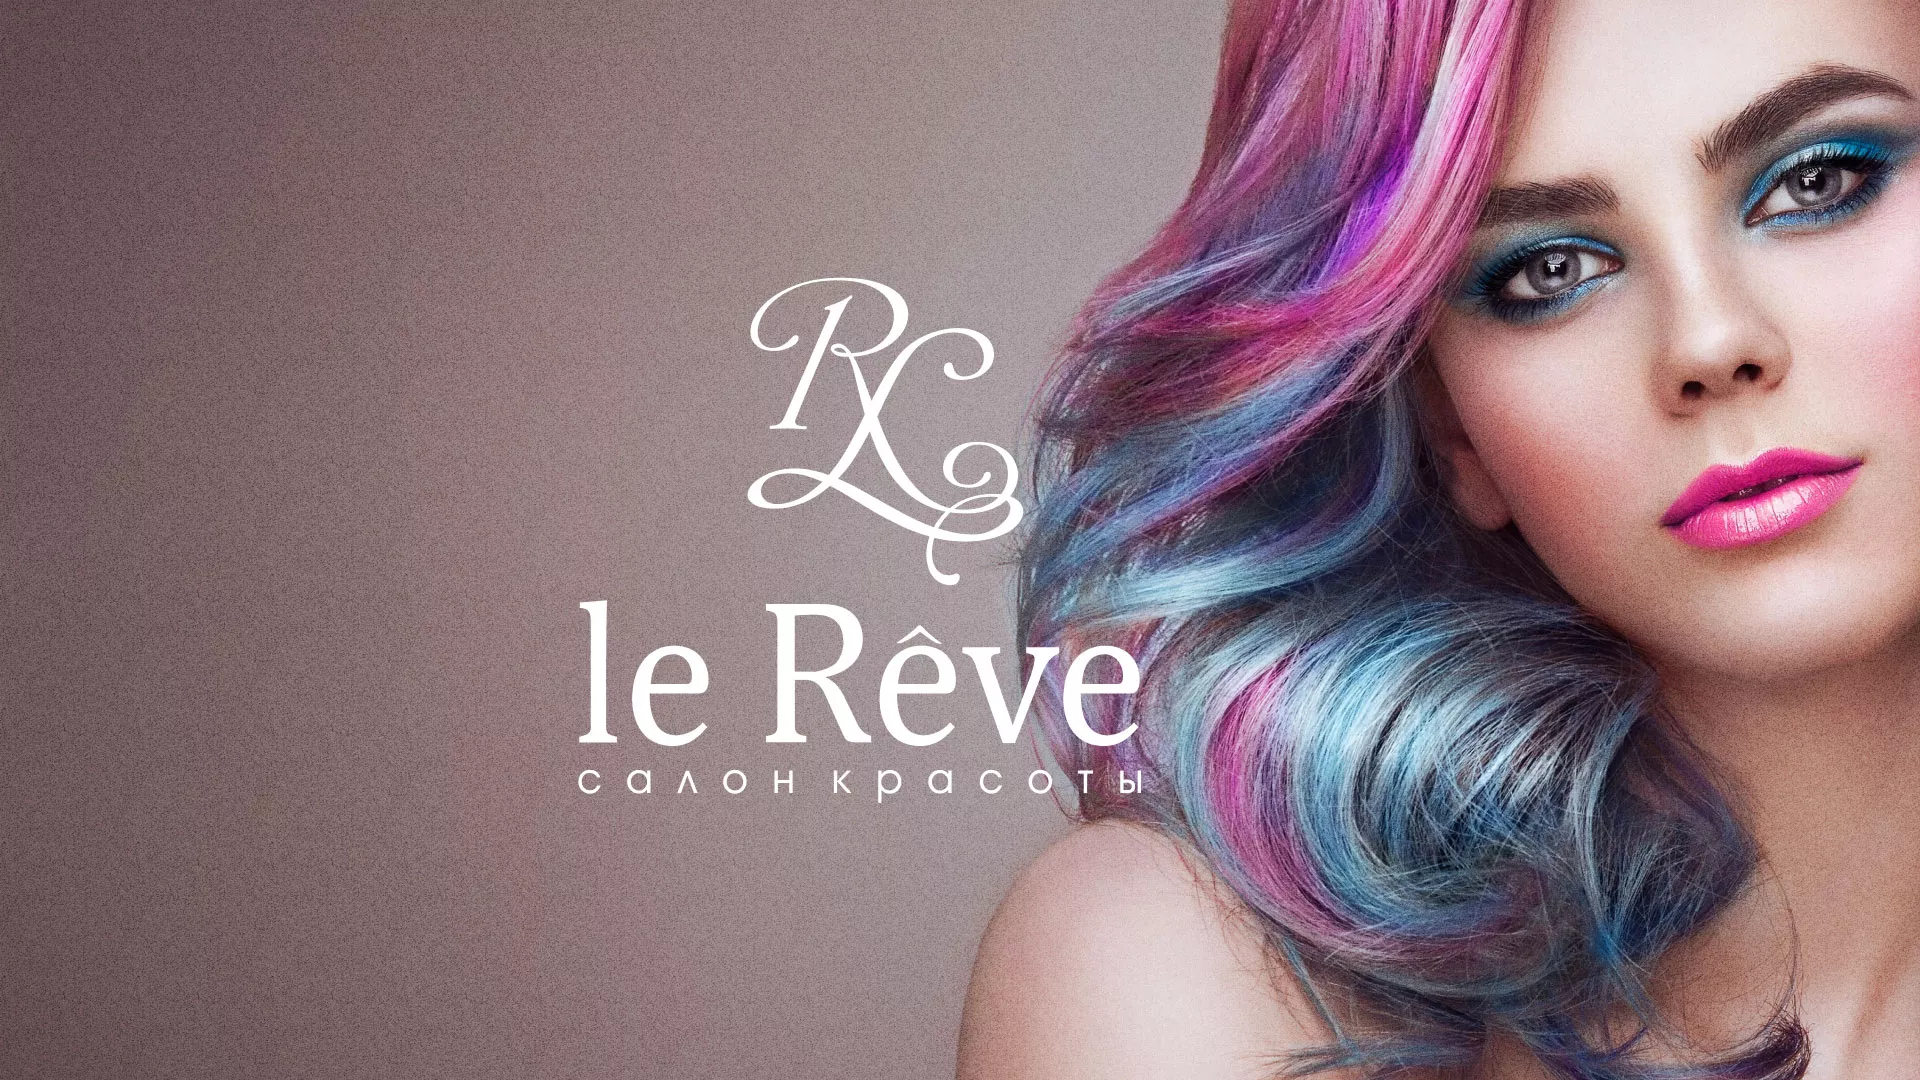 Создание сайта для салона красоты «Le Reve» в Ахтубинске